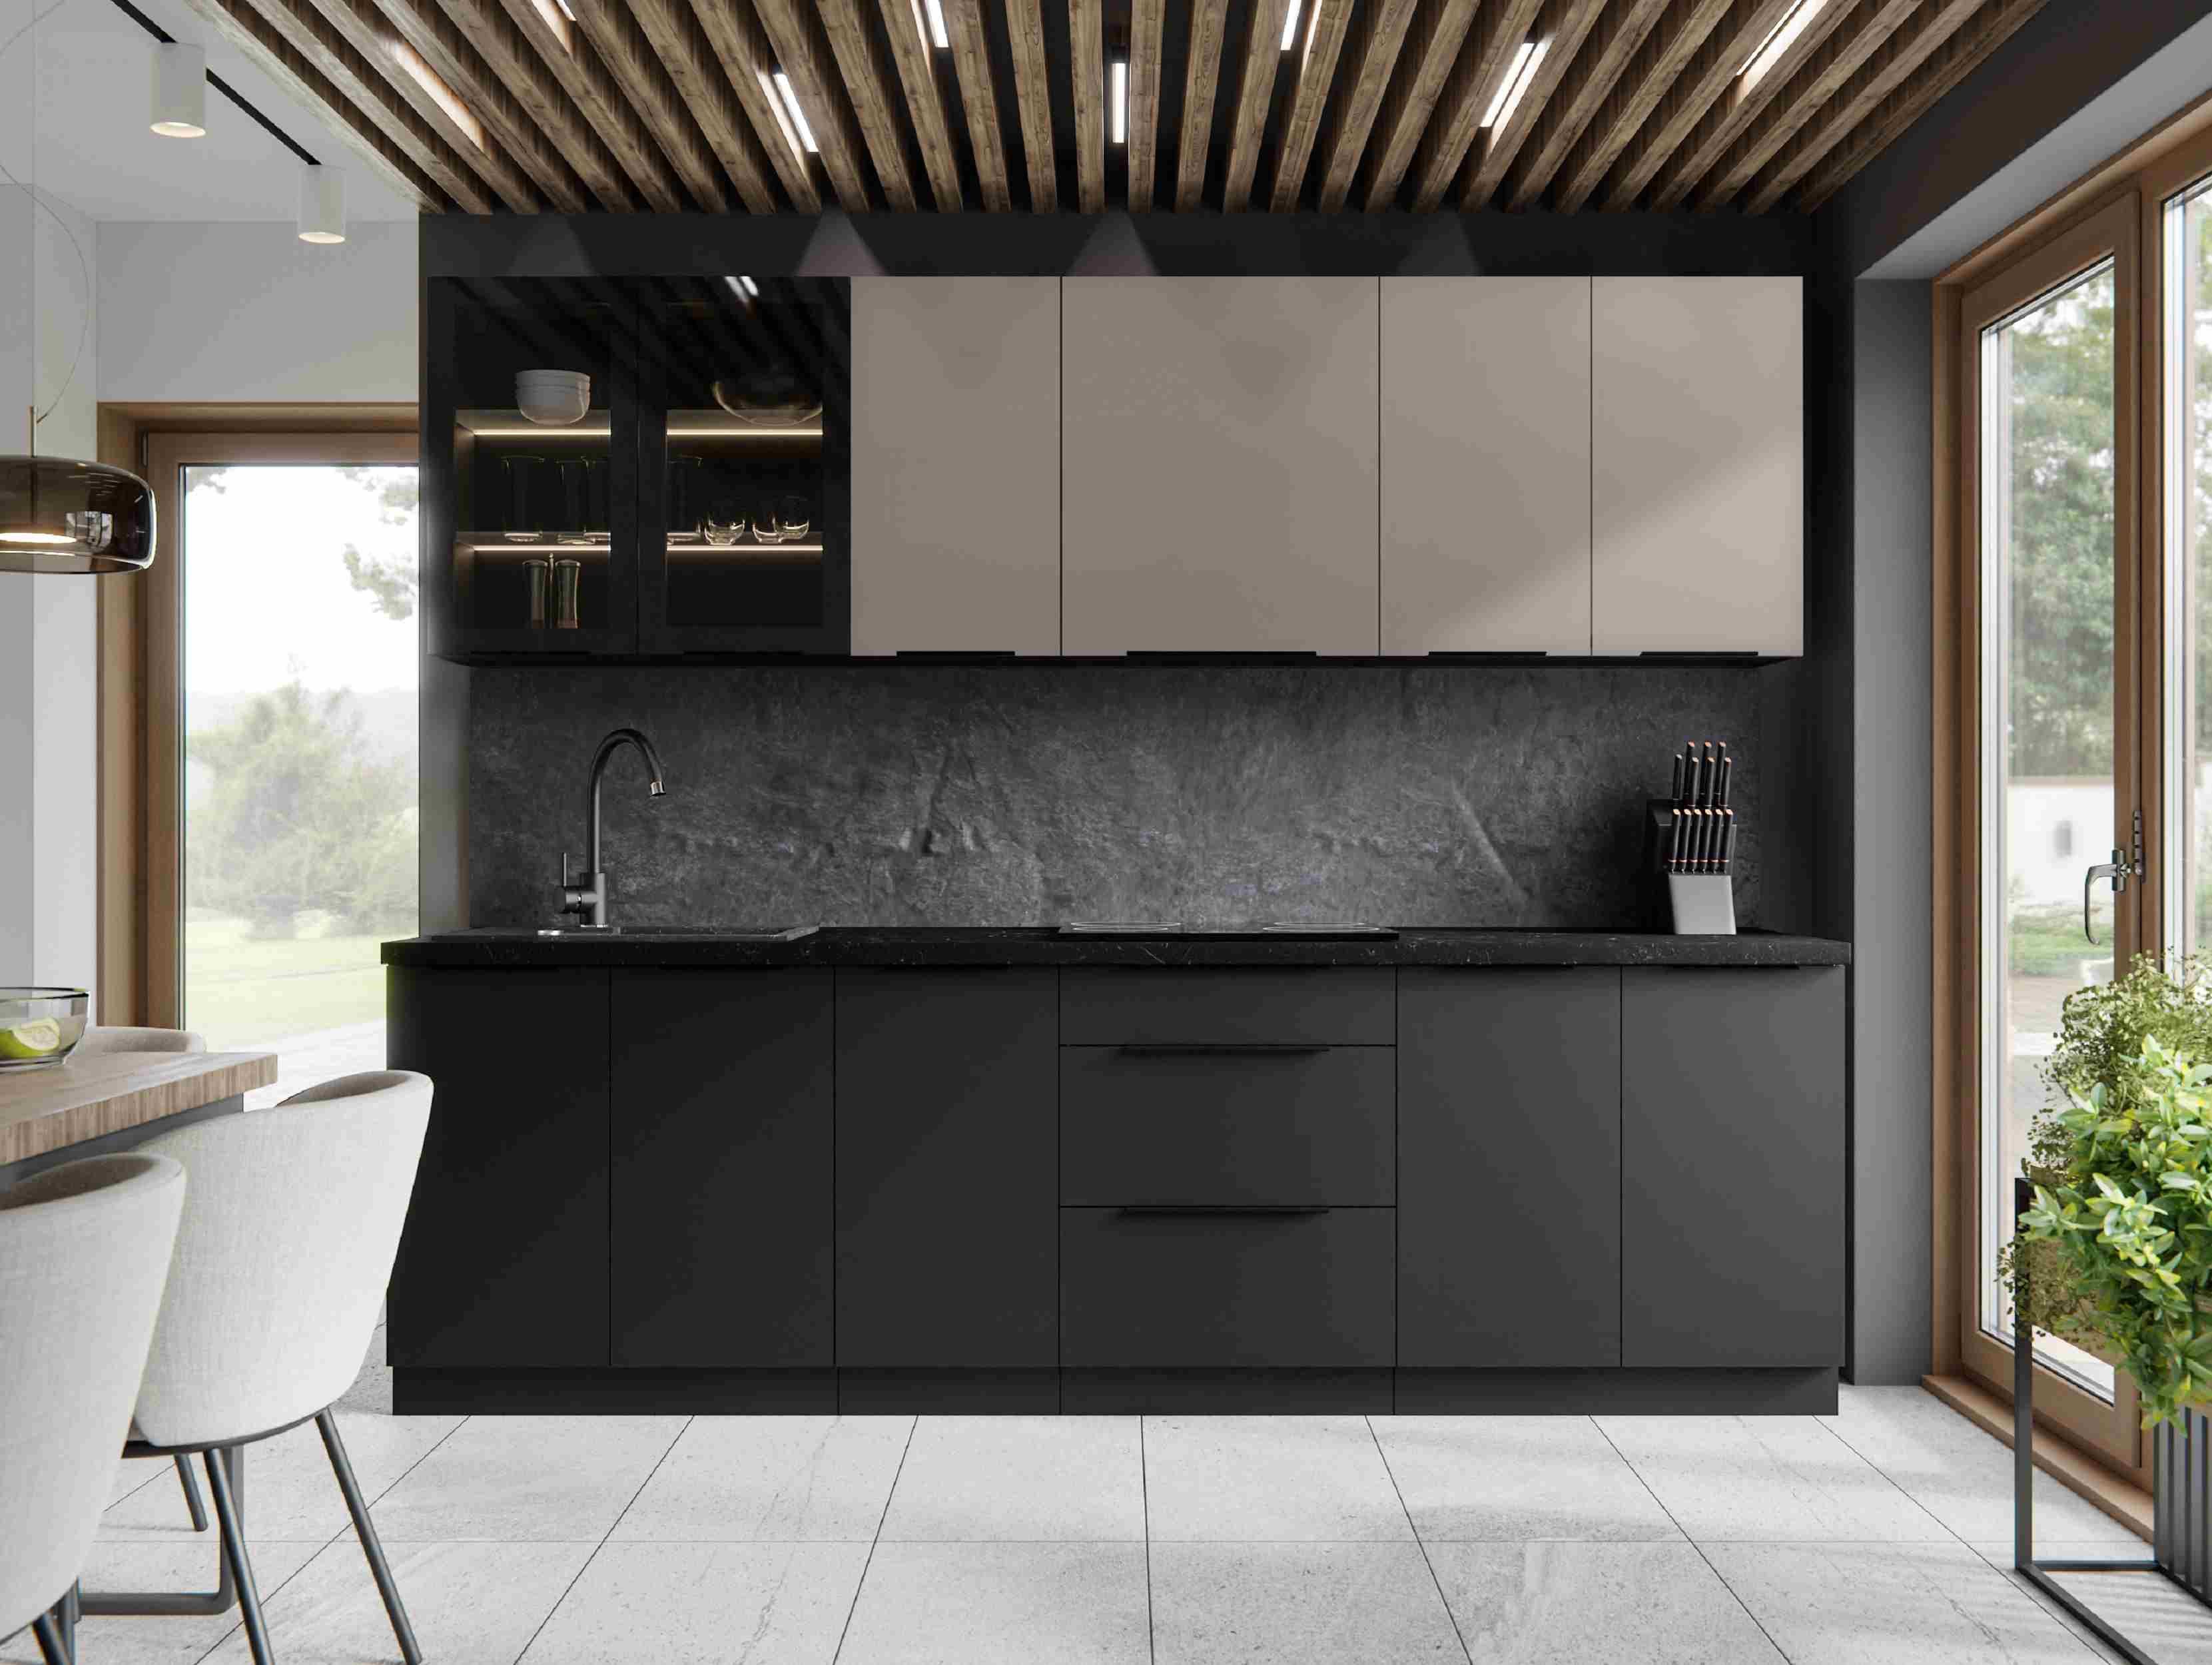 Furnix Küchenzeile Lynette-Linares 260 cm Kuchenmöbel-Set Küche Kaschmir/Schwarz, Maße gesamt 260x85,8x60 cm, ästhetisches topaktuelles Design